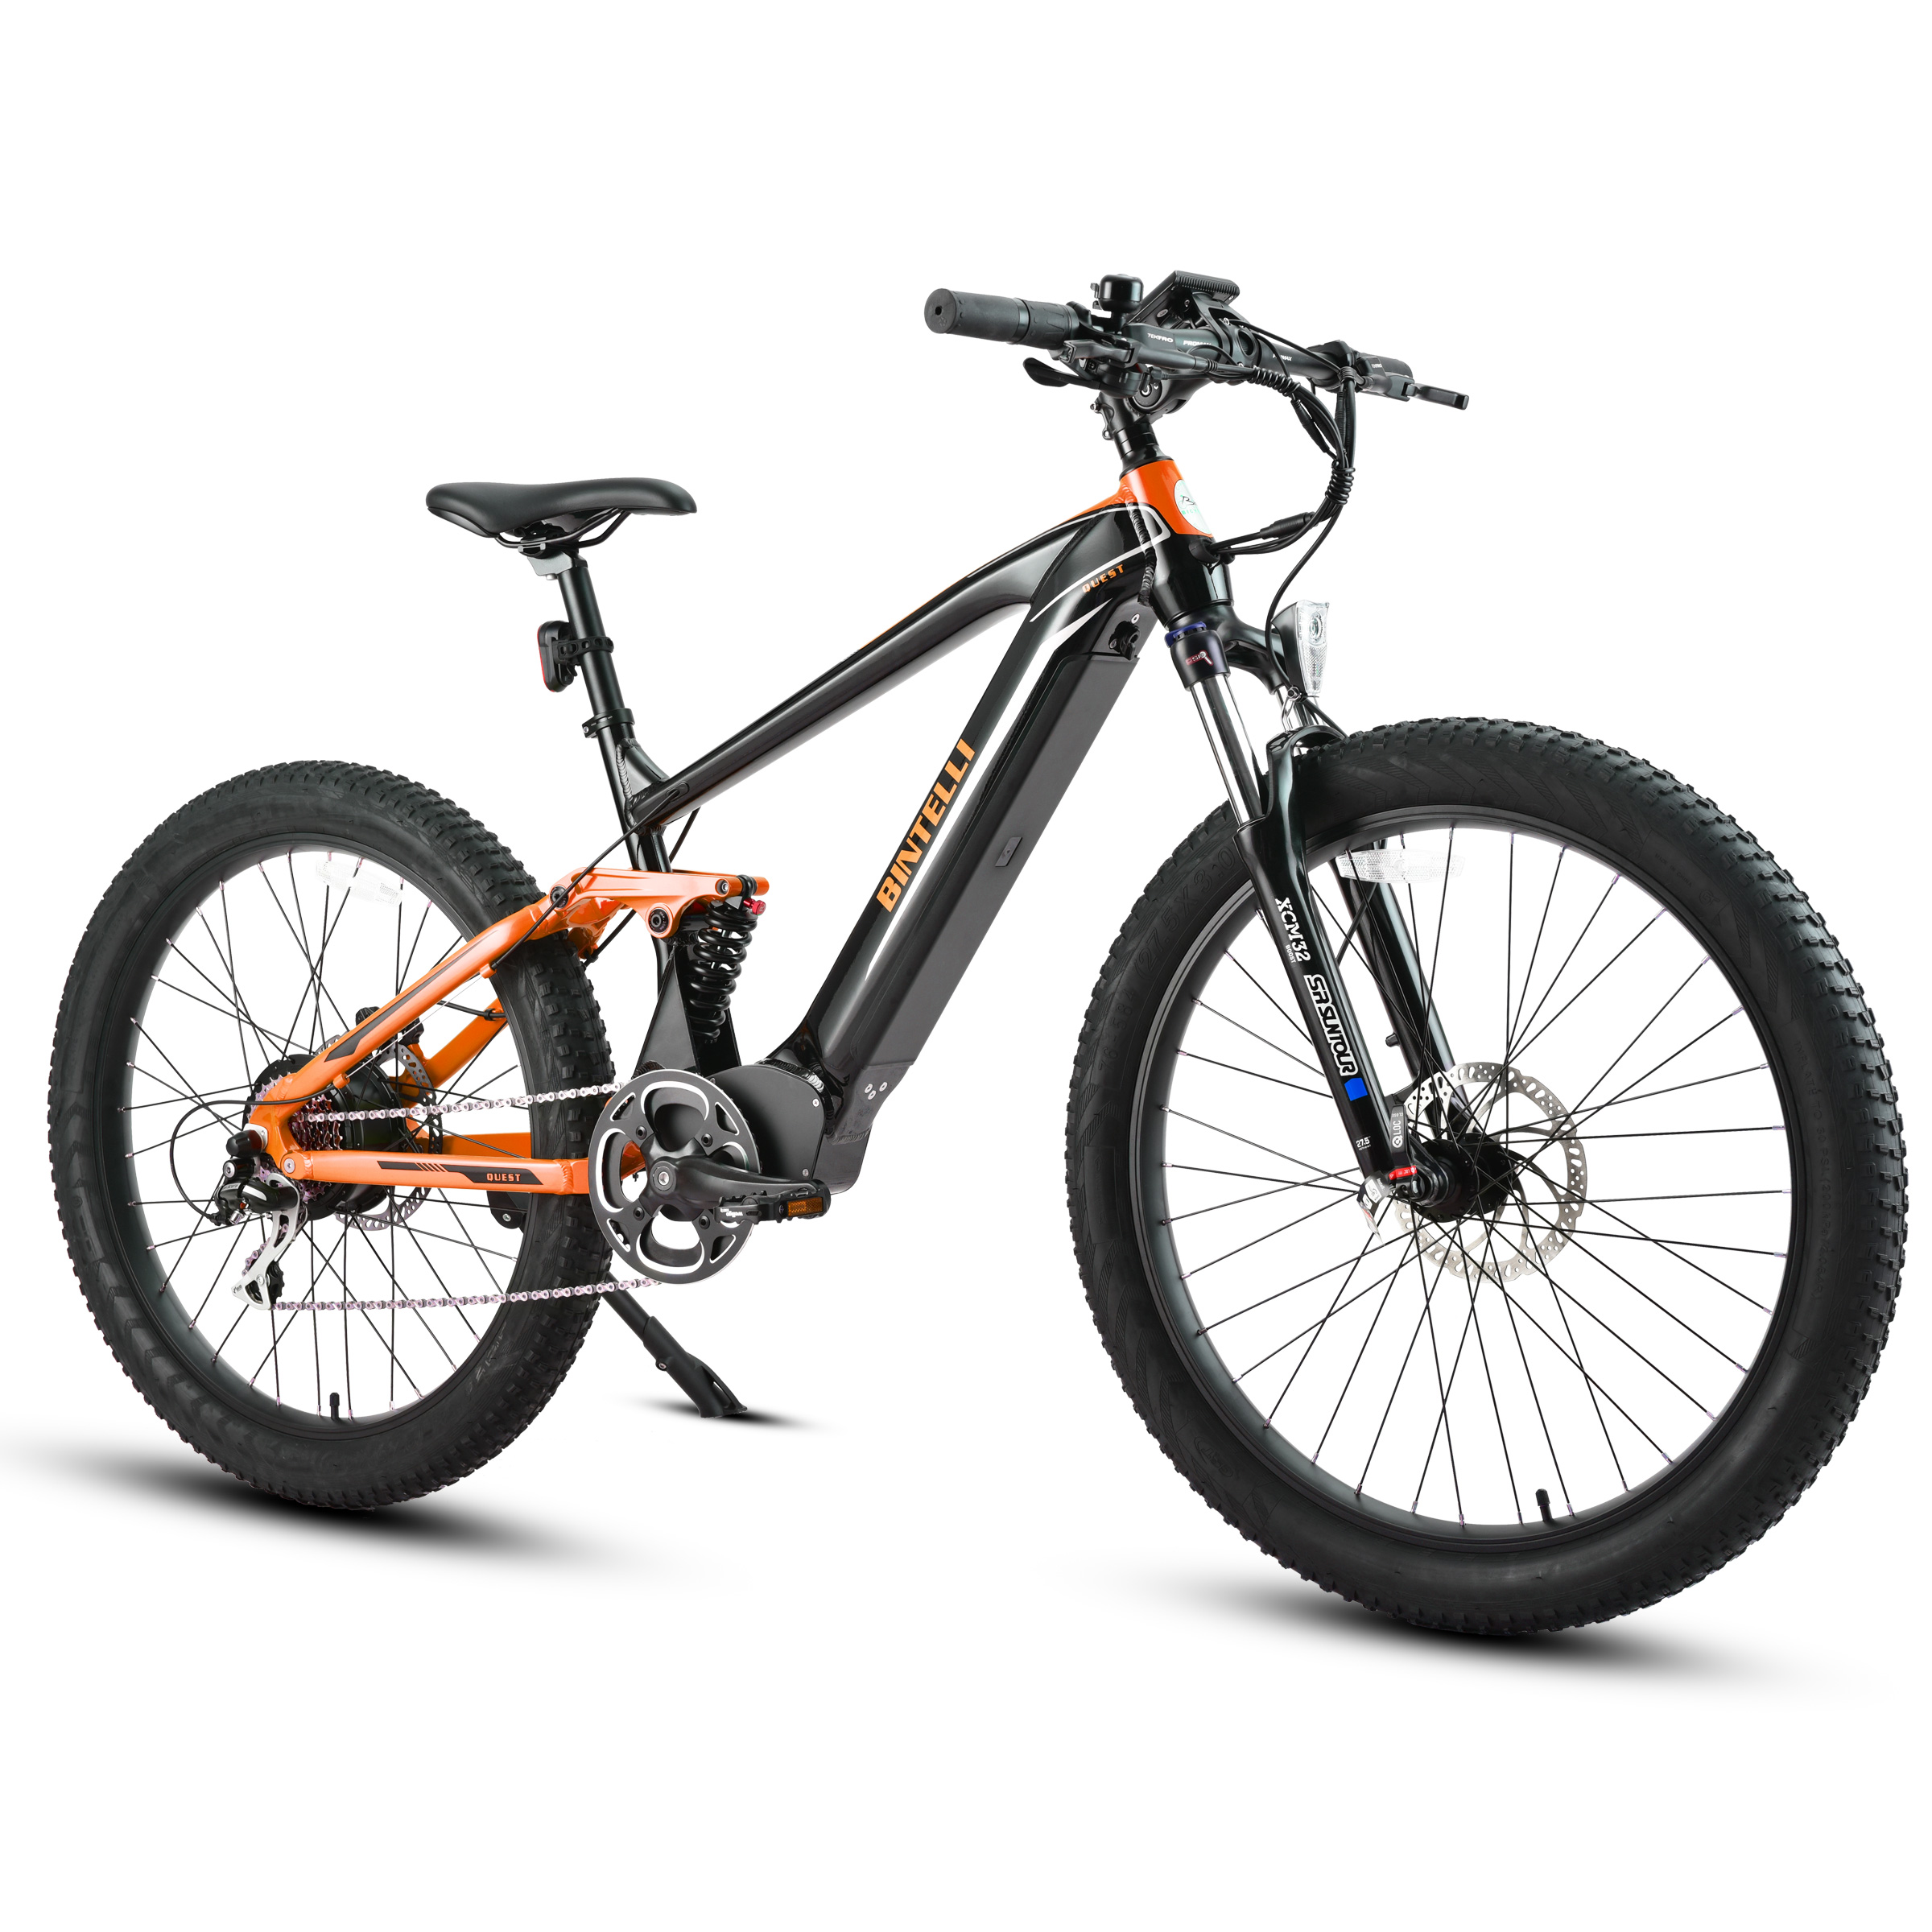 Bintelli Quest Fast Electric Bike in Color Black/Orange